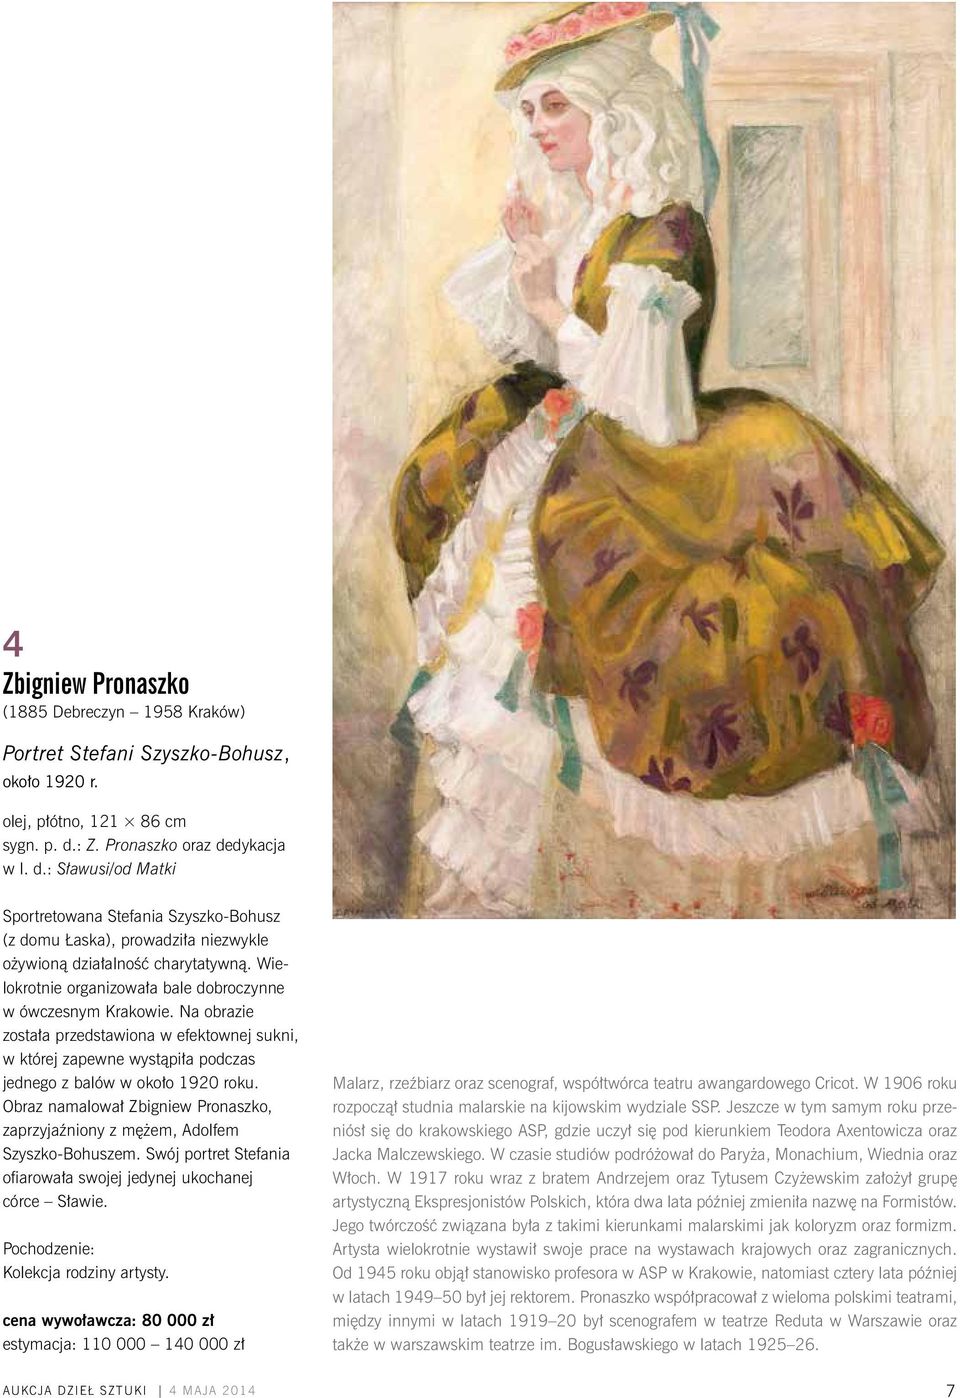 Wielokrotnie organizowała bale dobroczynne w ówczesnym Krakowie. Na obrazie została przedstawiona w efektownej sukni, w której zapewne wystąpiła podczas jednego z balów w około 1920 roku.